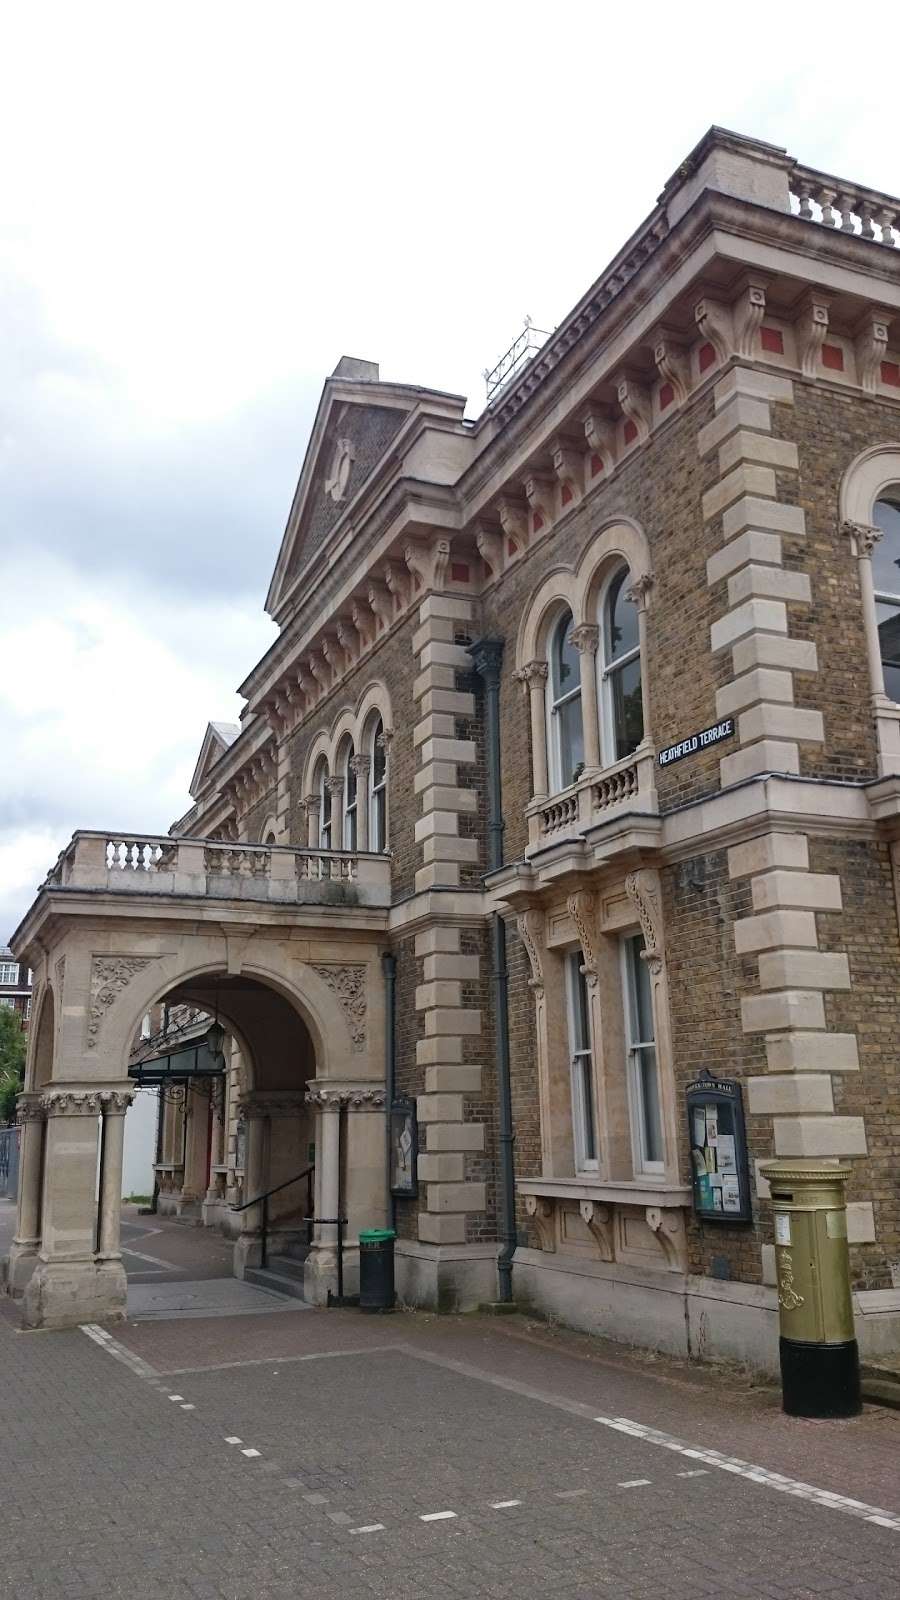 Chiswick Town Hall | Chiswick Town Hall Heathfield Terrace, Turnham Green, Chiswick, London W4 4JN, UK | Phone: 0345 456 6675